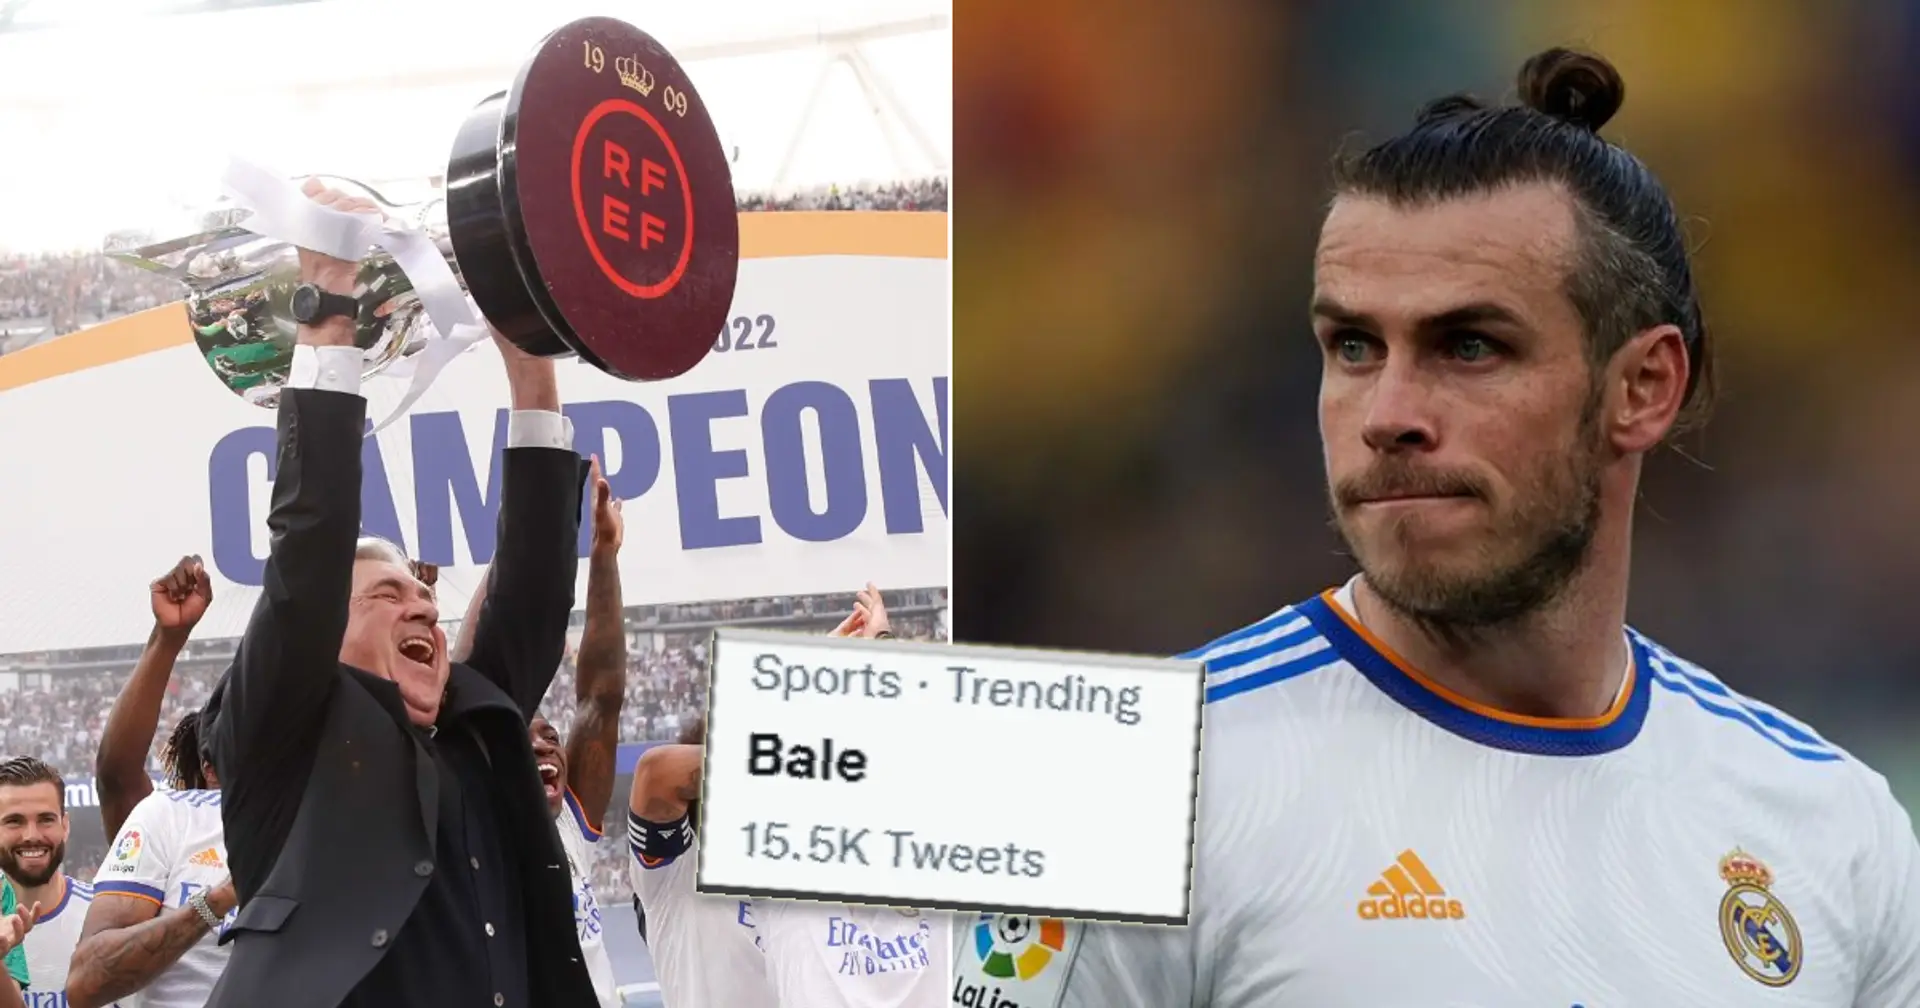 Bale es tendencia en Twitter tras los fanáticos de Madrid encuentran algo extraño en las celebraciones de la victoria de La Liga